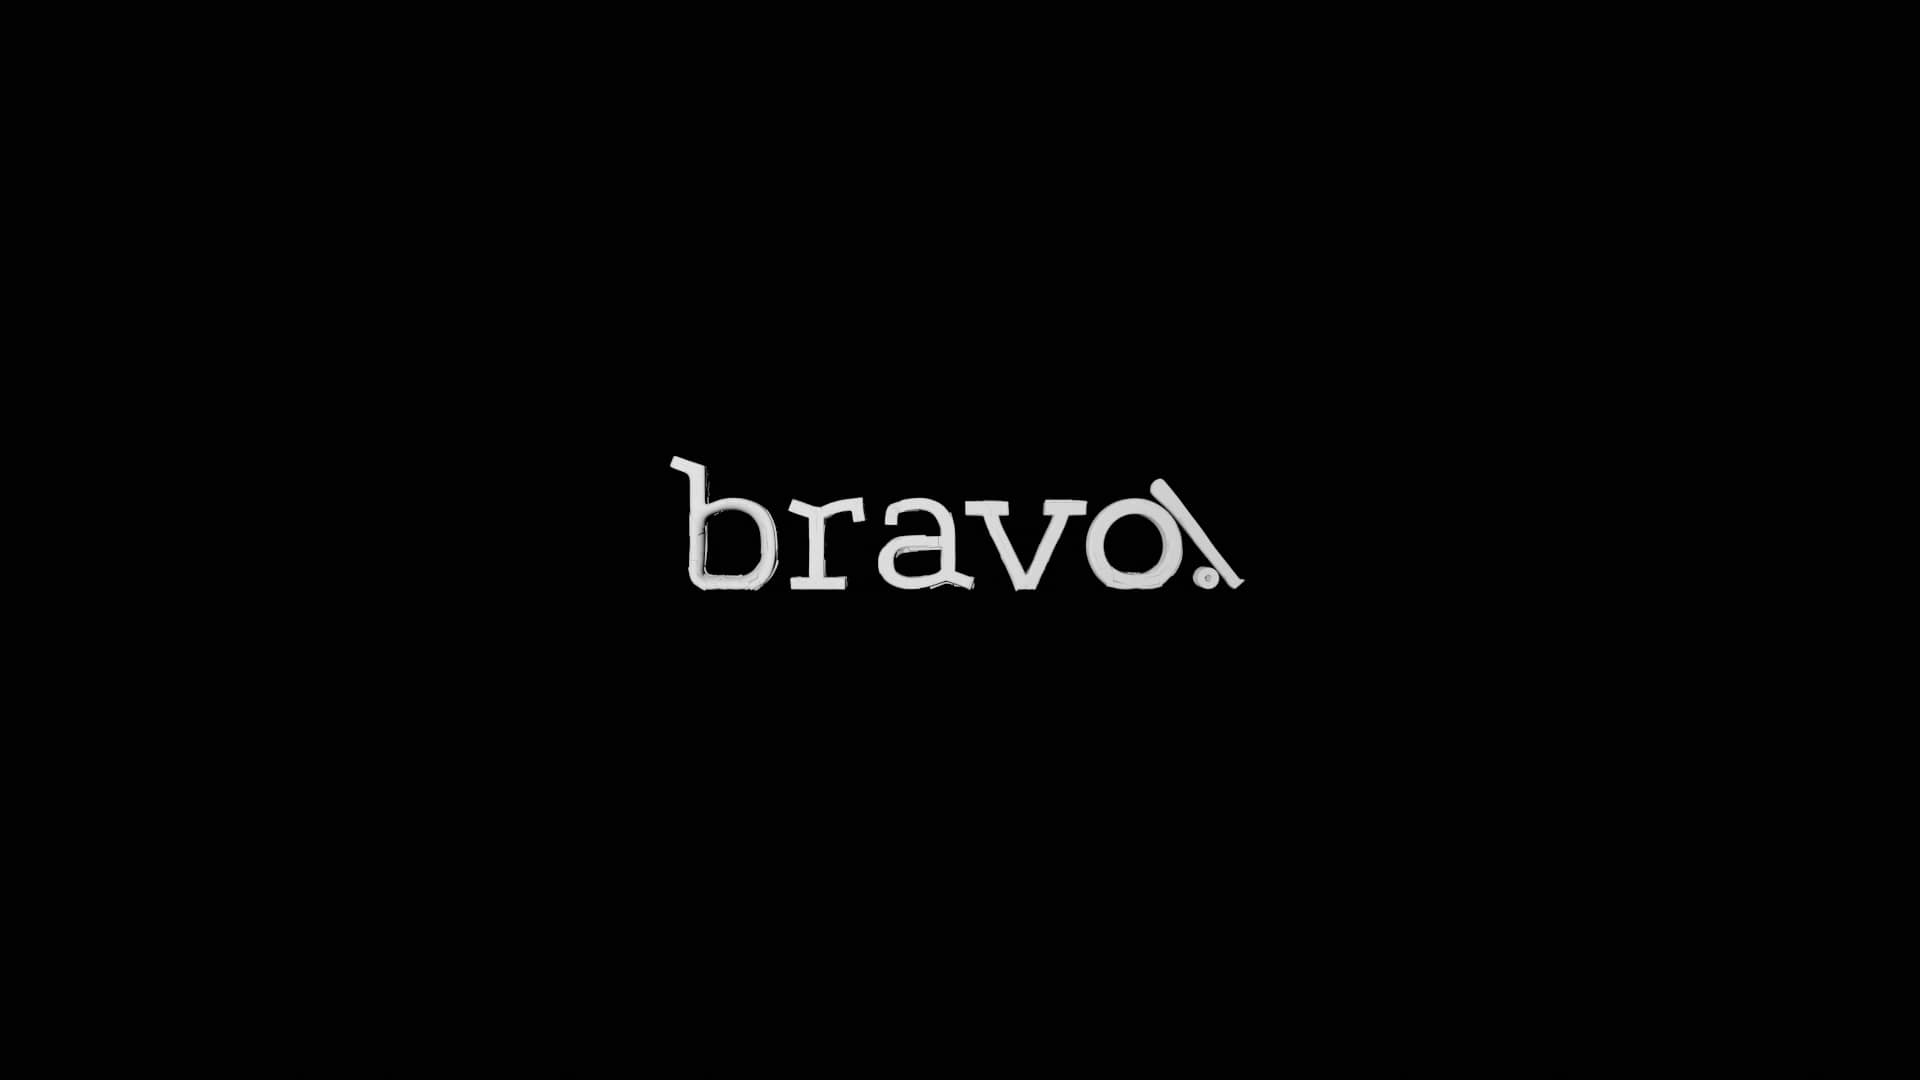 logo_bravo!_v1.mp4 on Vimeo